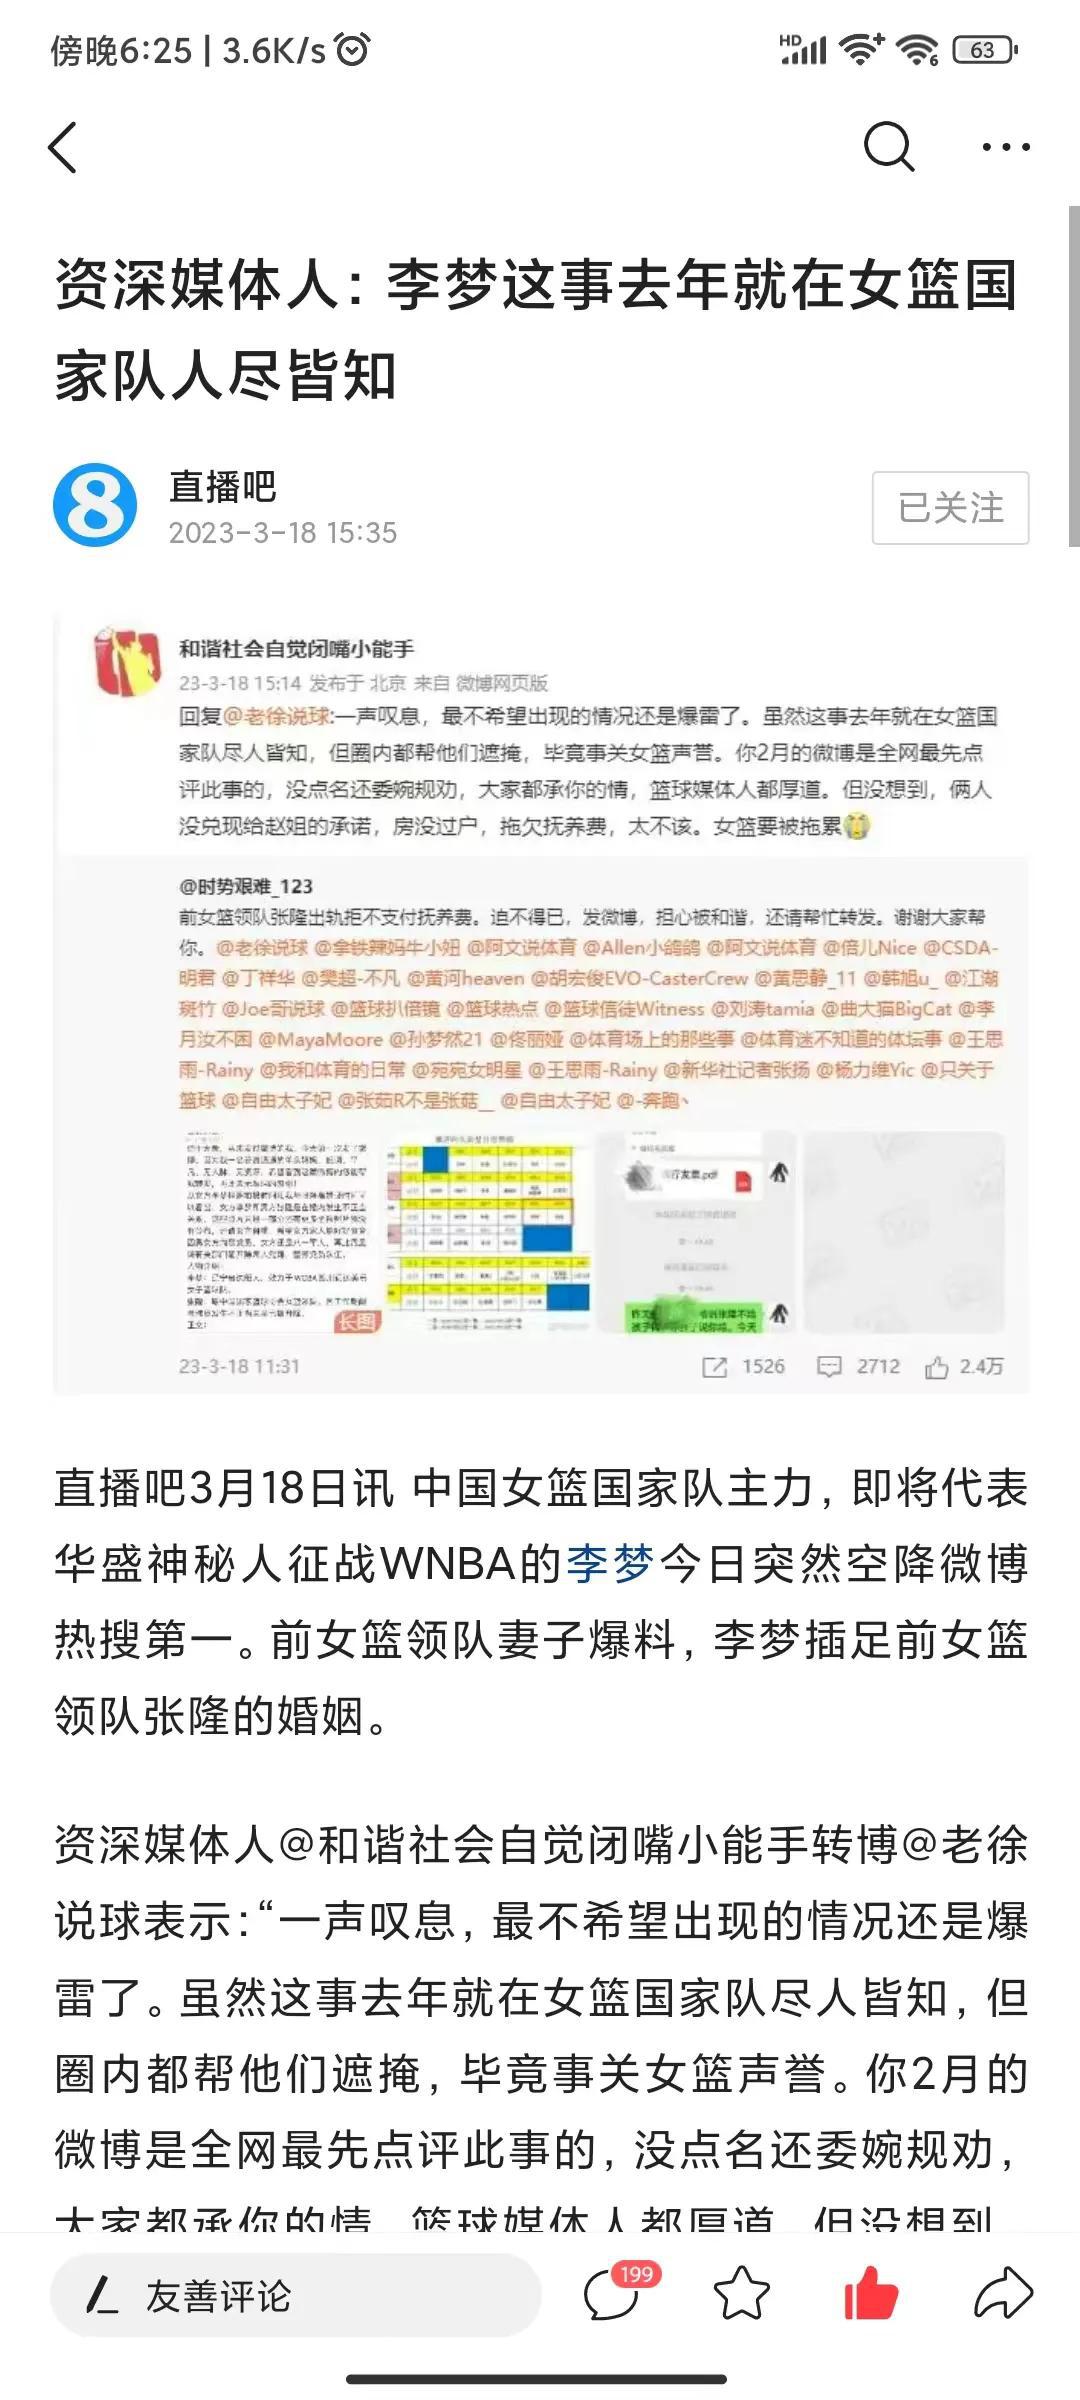 争议！李梦丑闻败露，篮协主席姚明也卷入其中，被球迷批评。

最近李梦做小三的事情